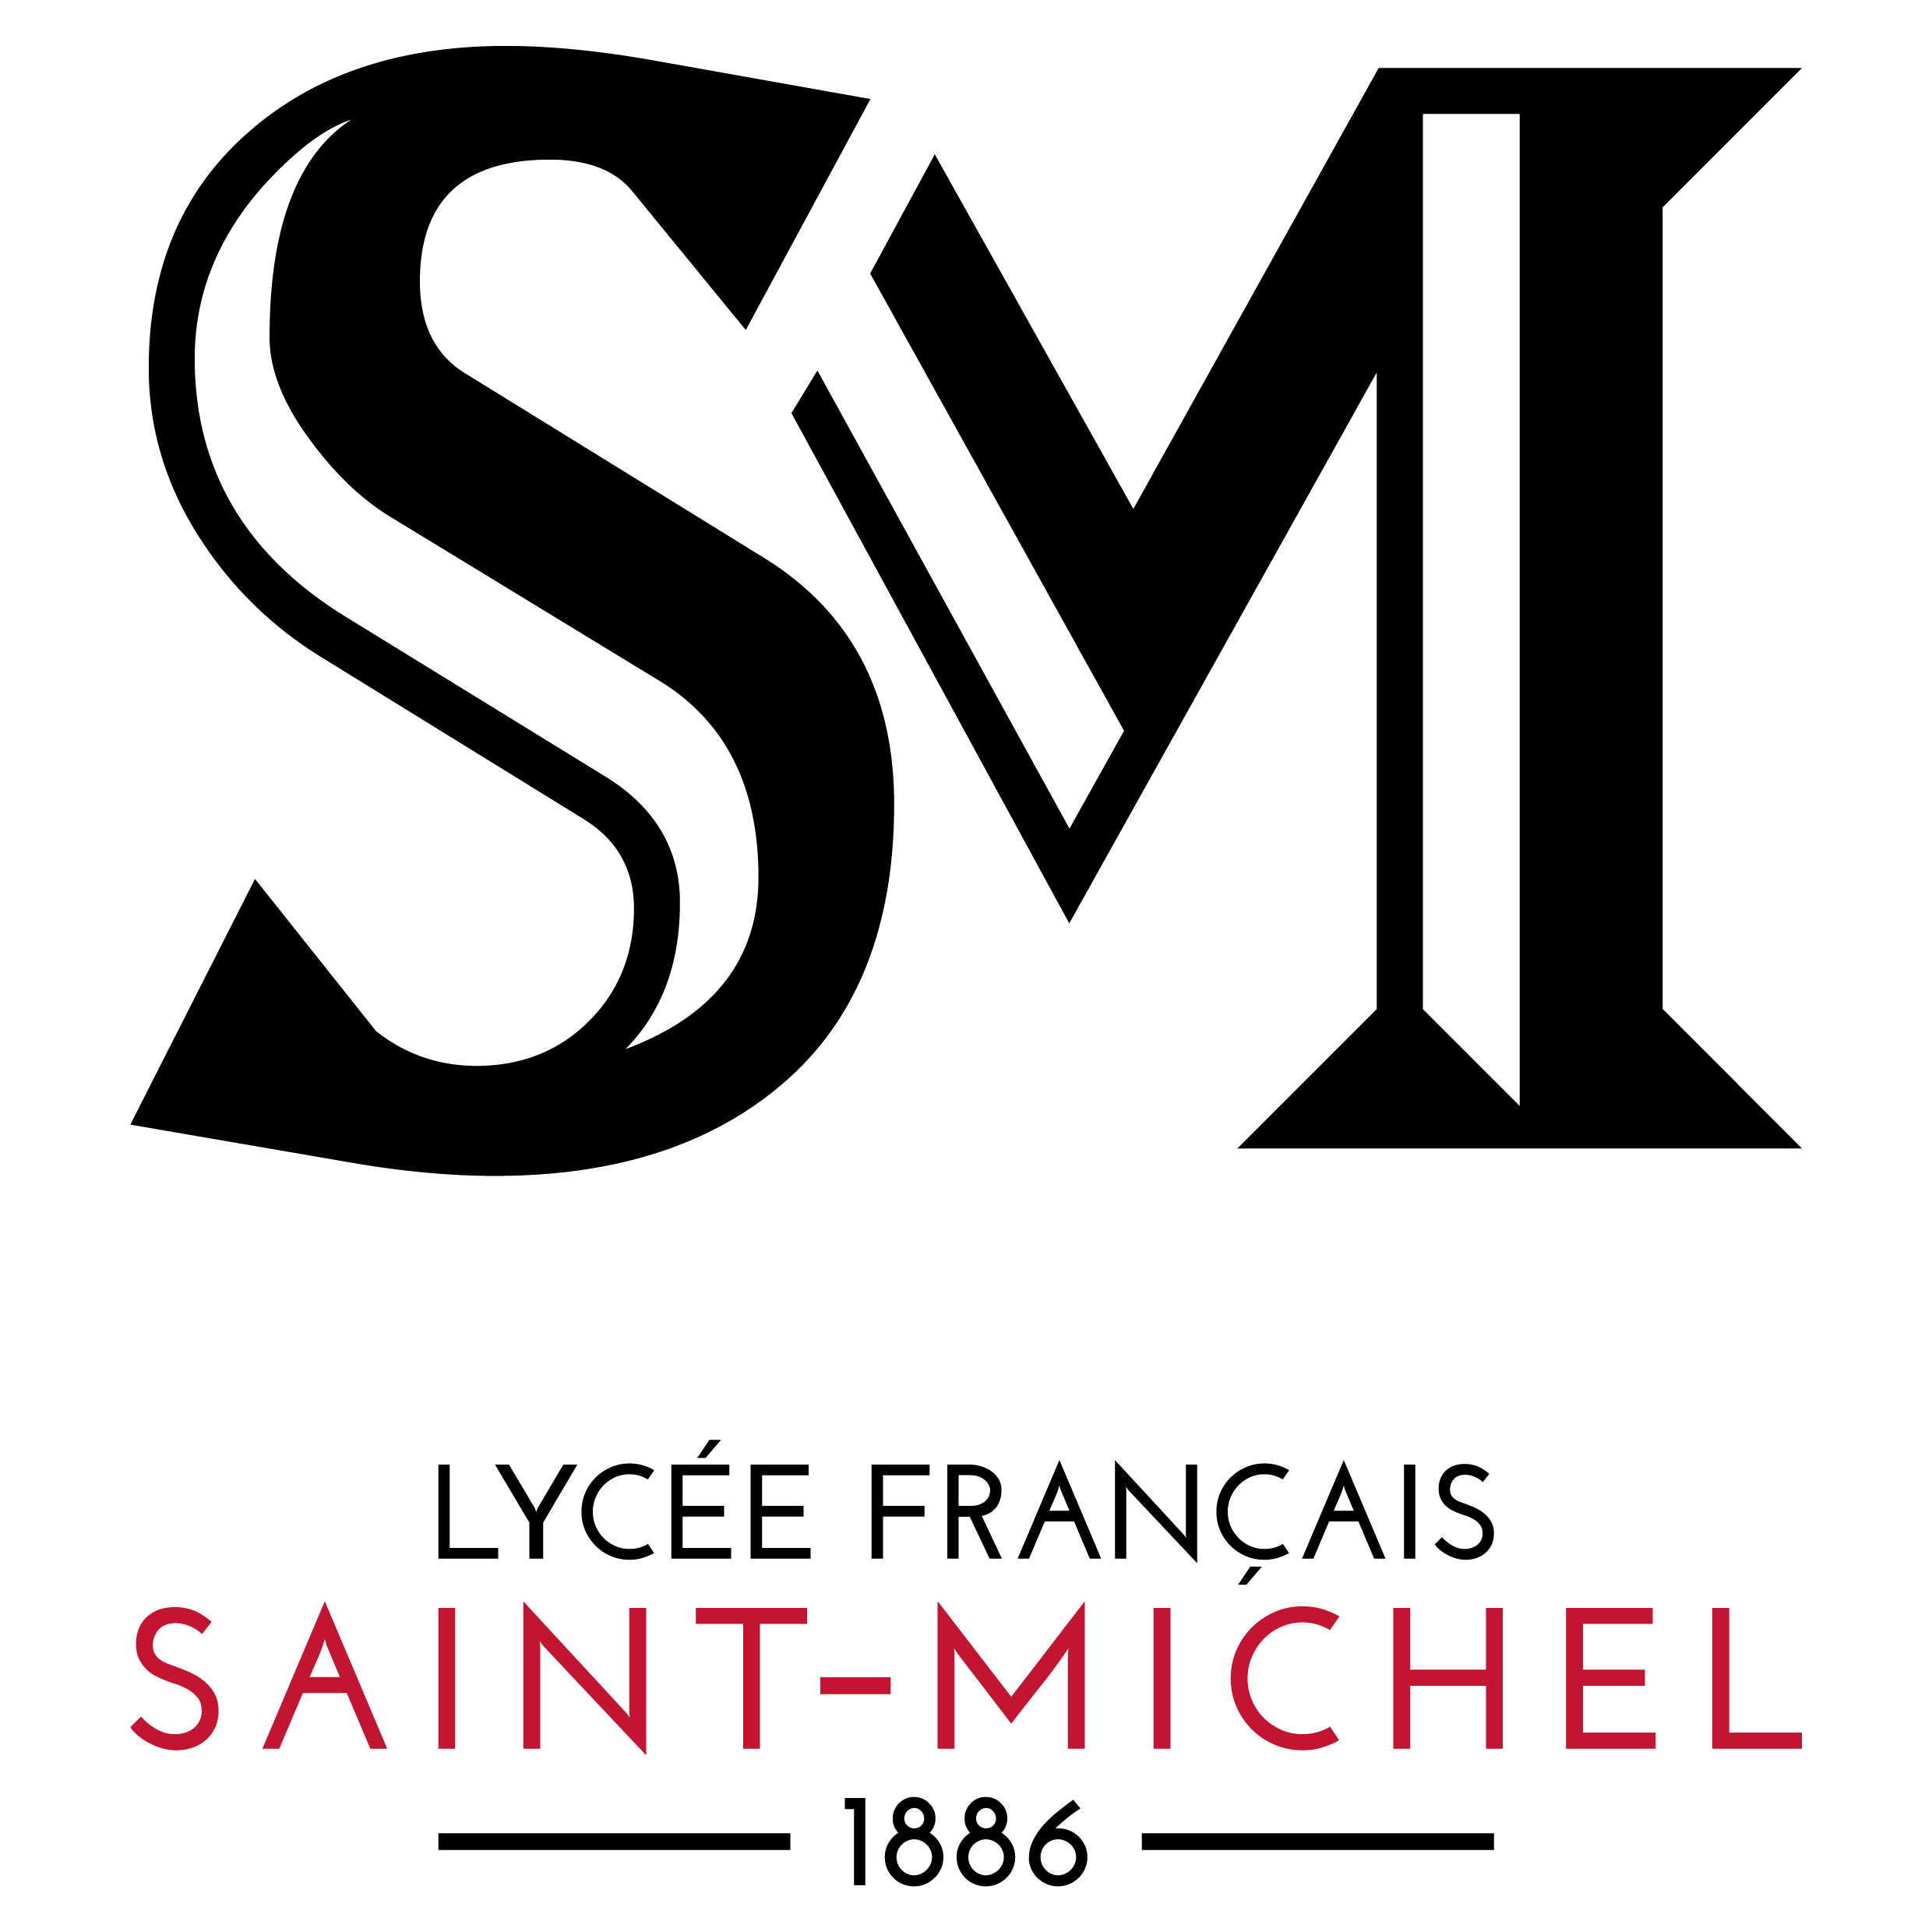 29 сен. Saint Michel бренд одежды.